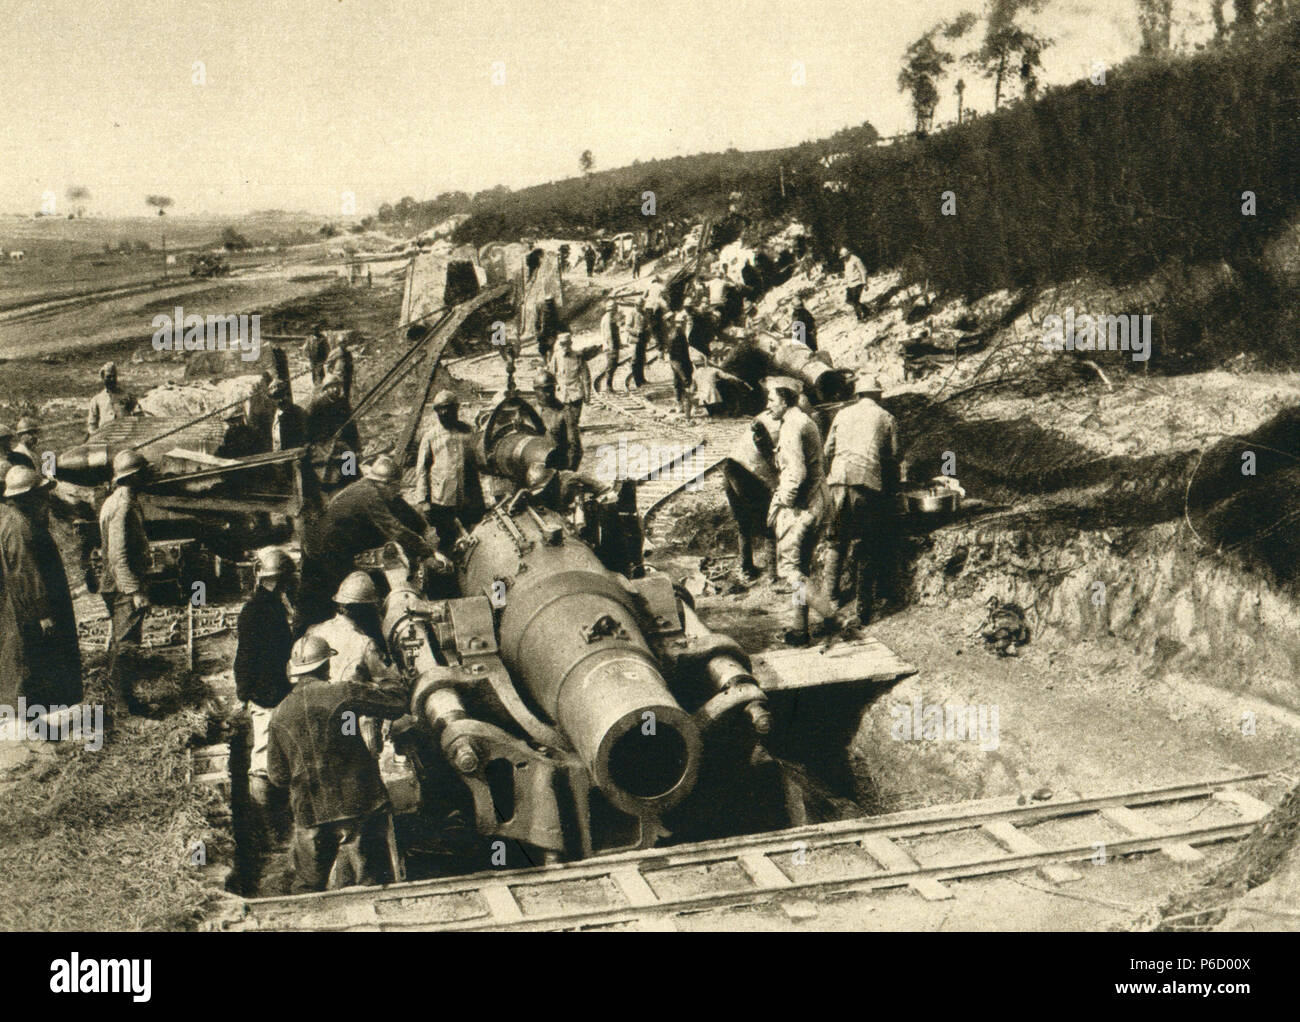 world war i, somme fight, 280 mm mortar, schlucht von braquette, ww1, wwi, world war one Stock Photo